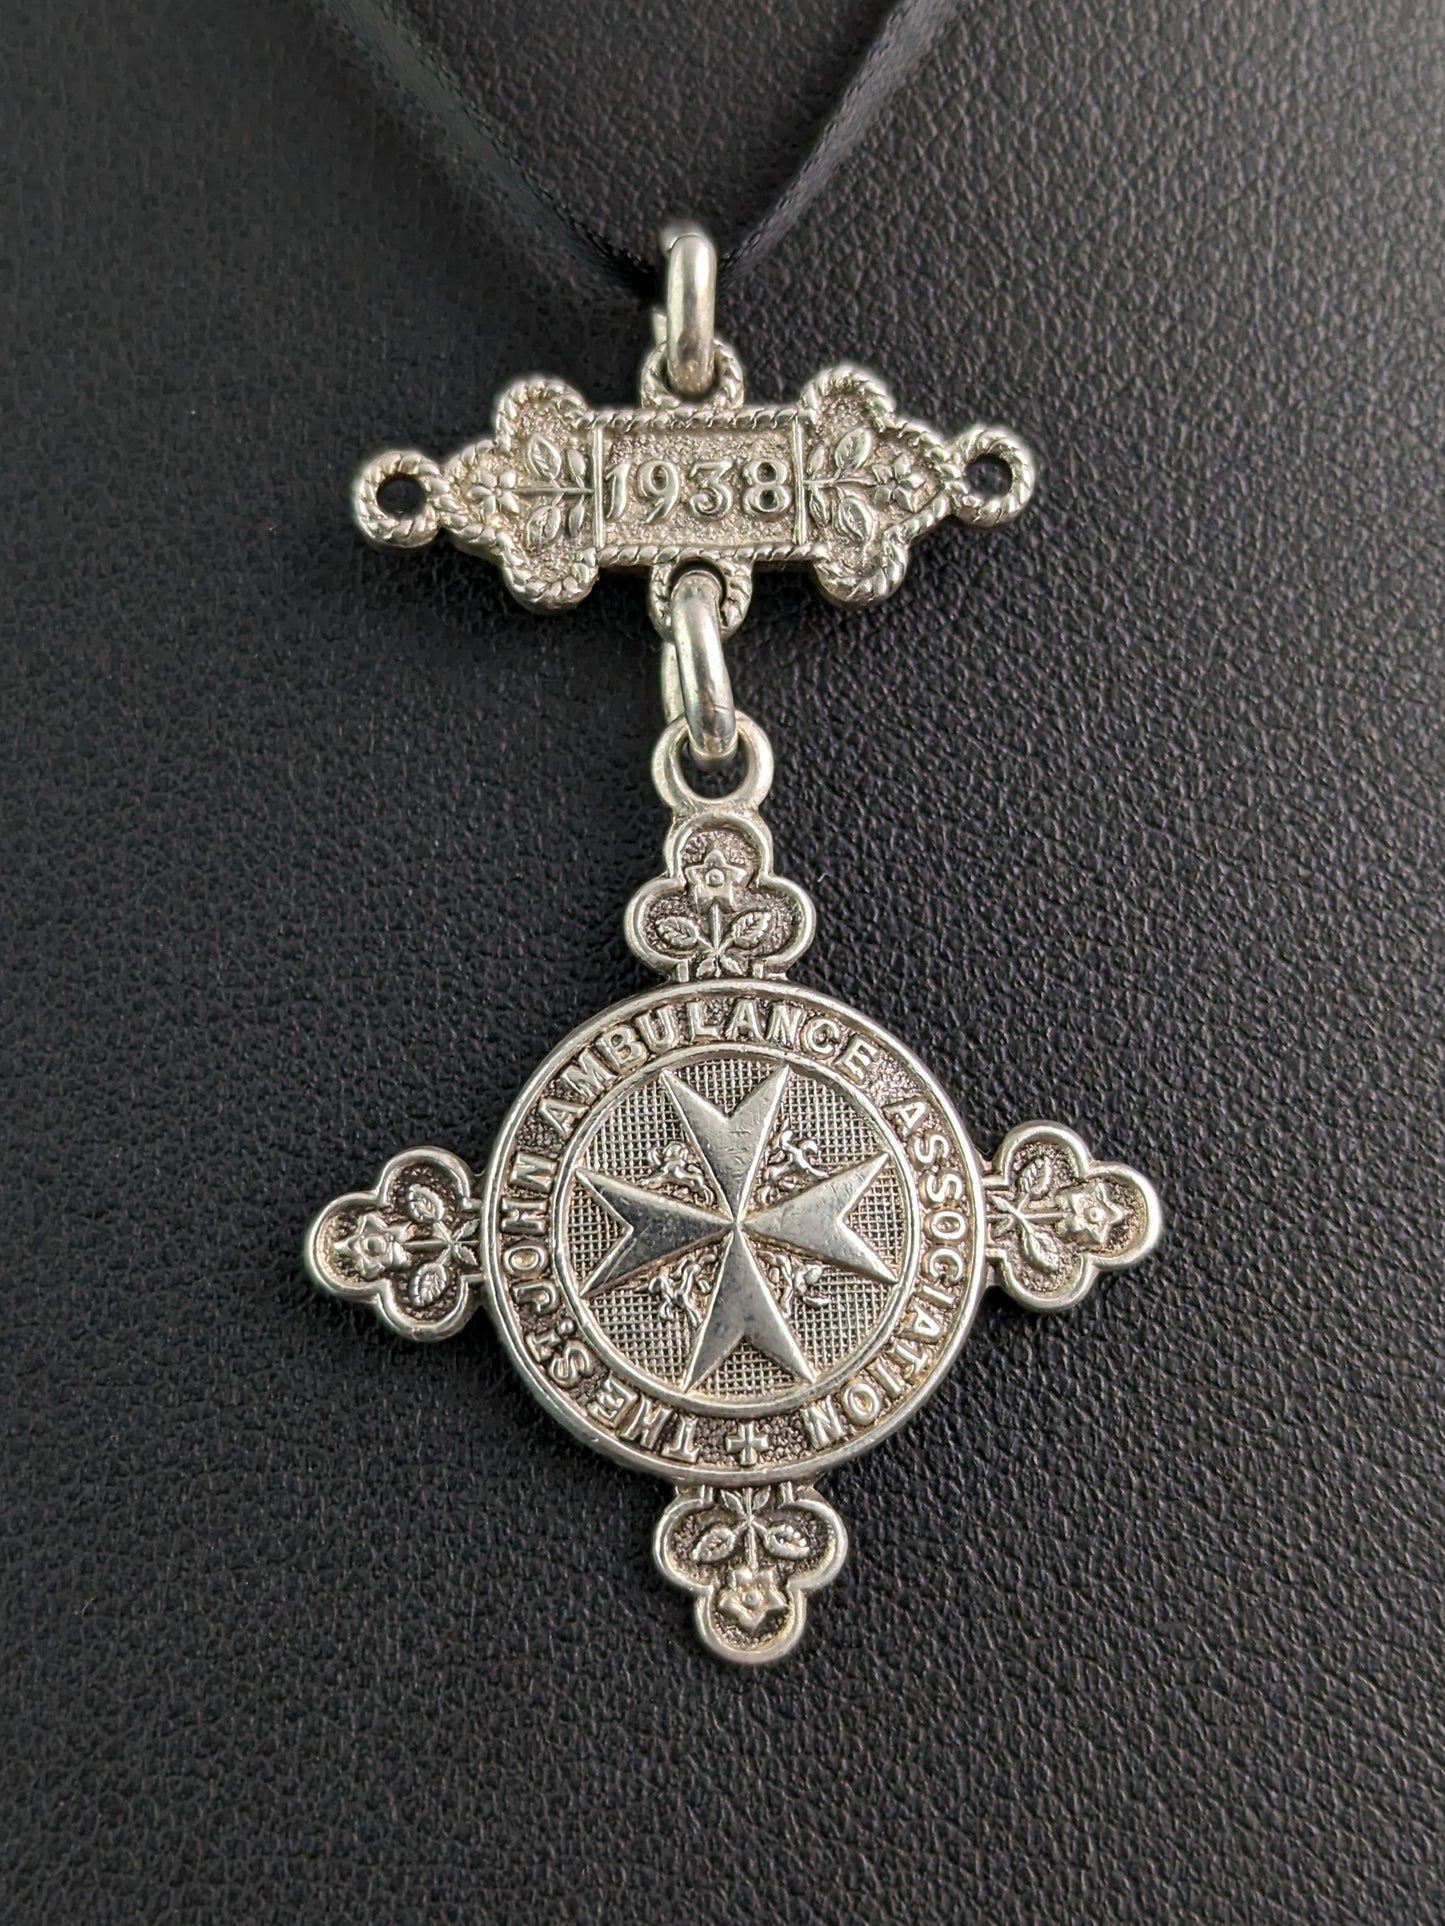 Vintage sterling silver fob pendant, St Johns Ambulance